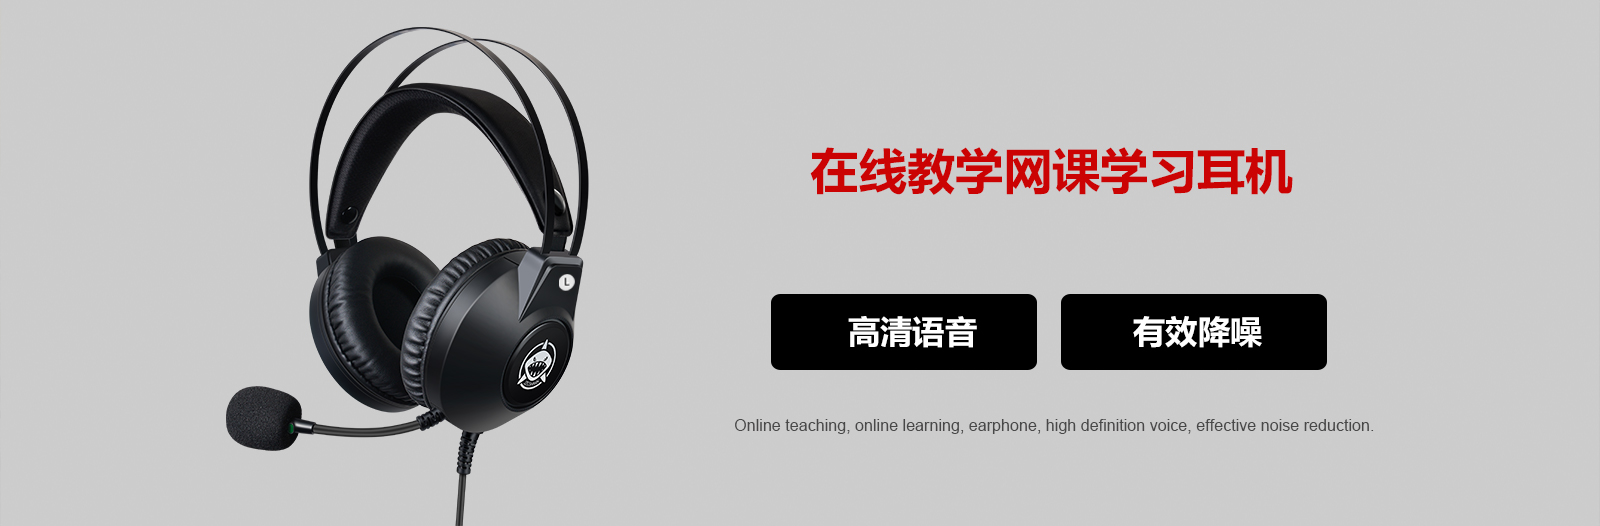 B2000在线教育学校学生网课学习耳机